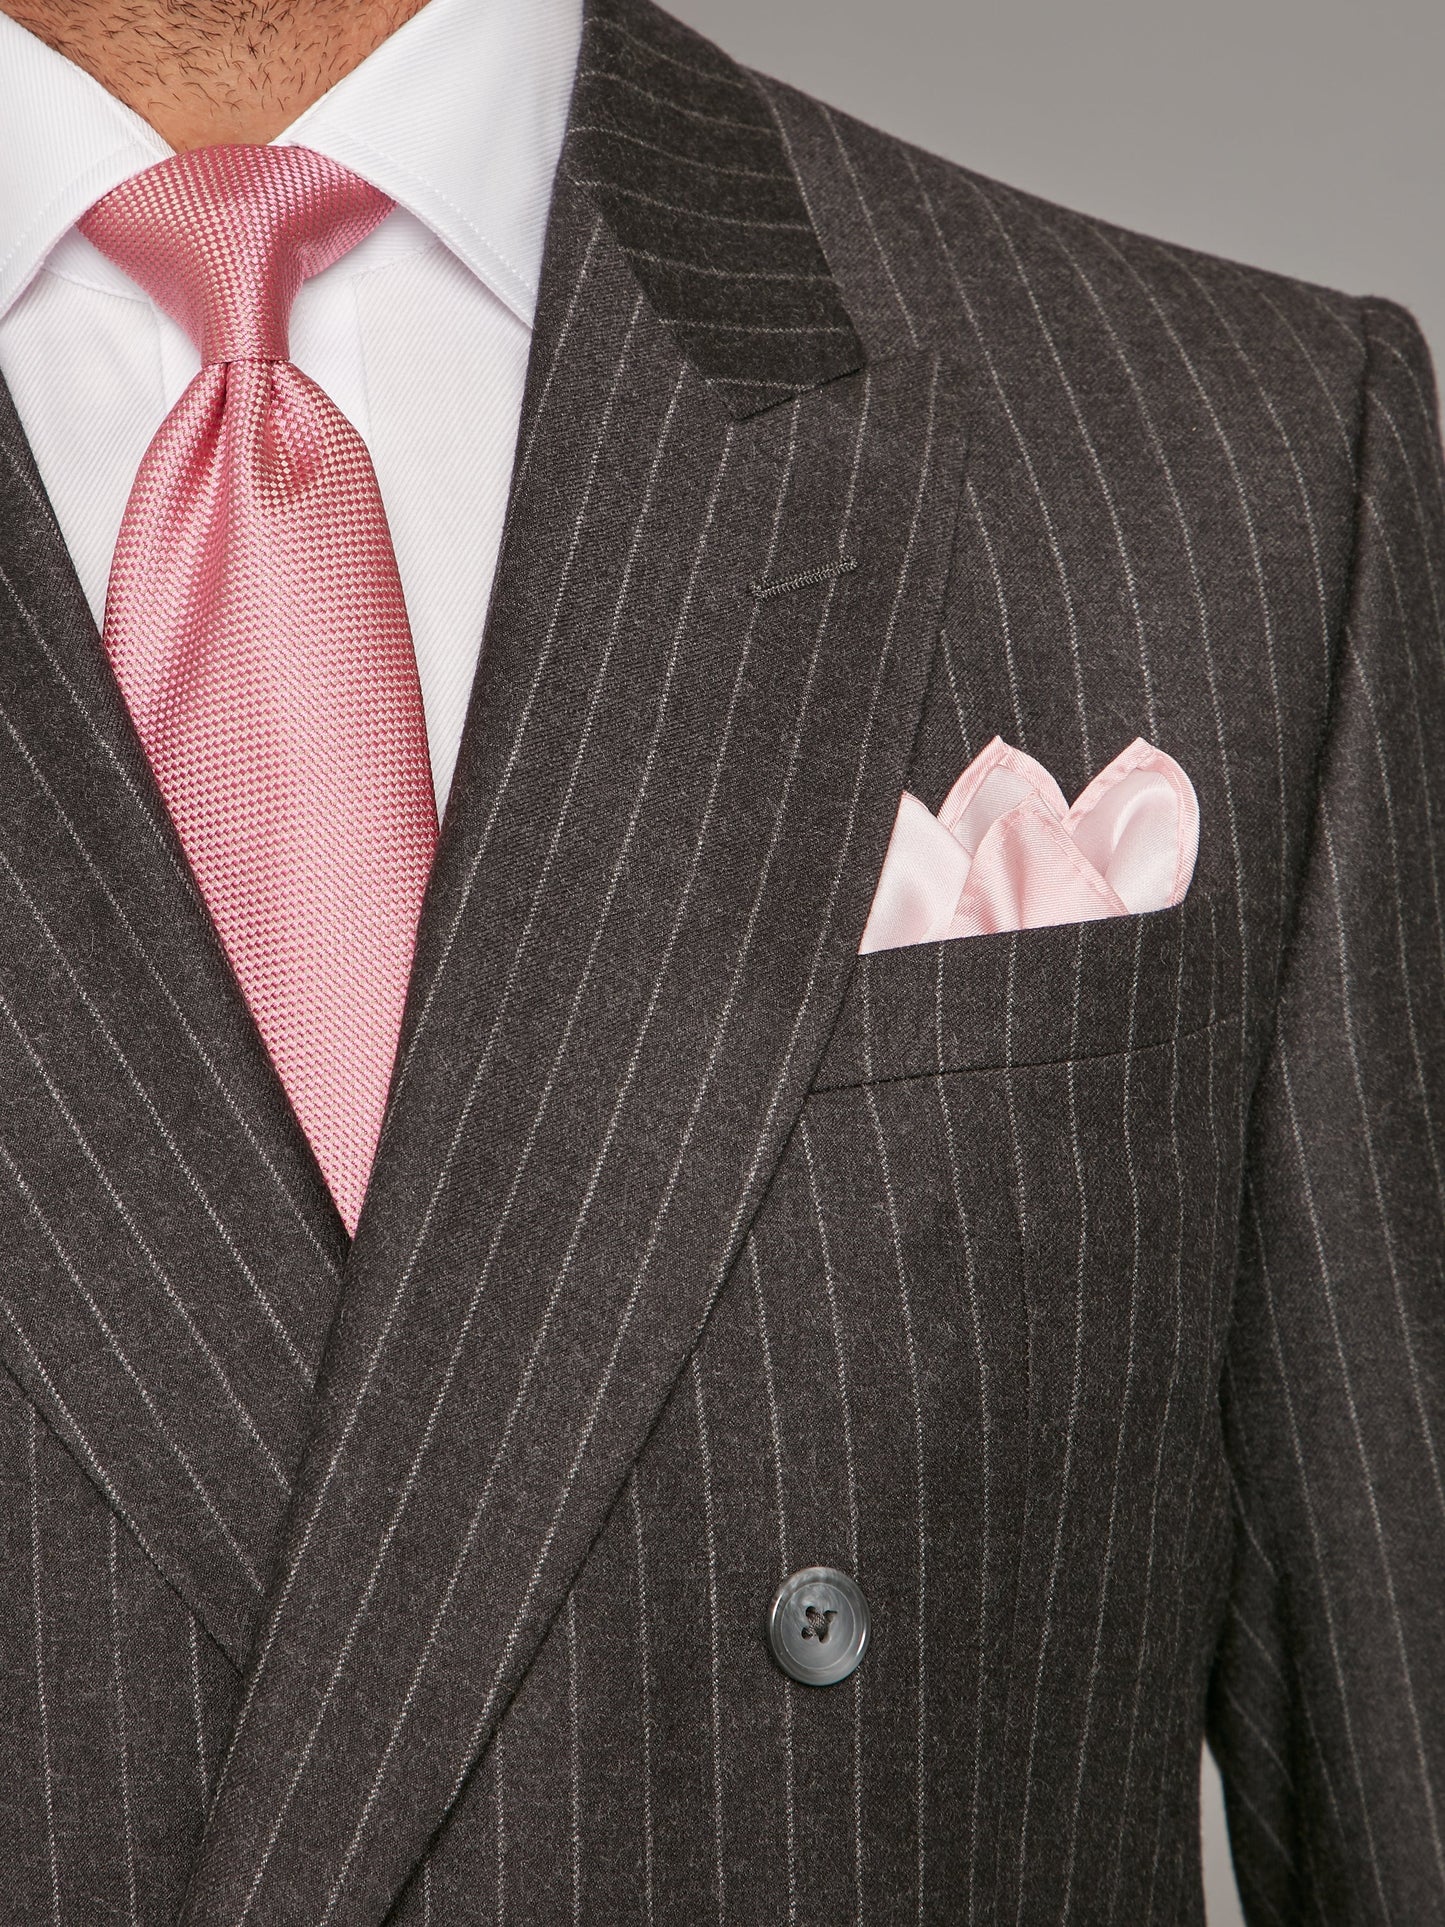 cadogan suit flannel chalk stripe charcoal 4